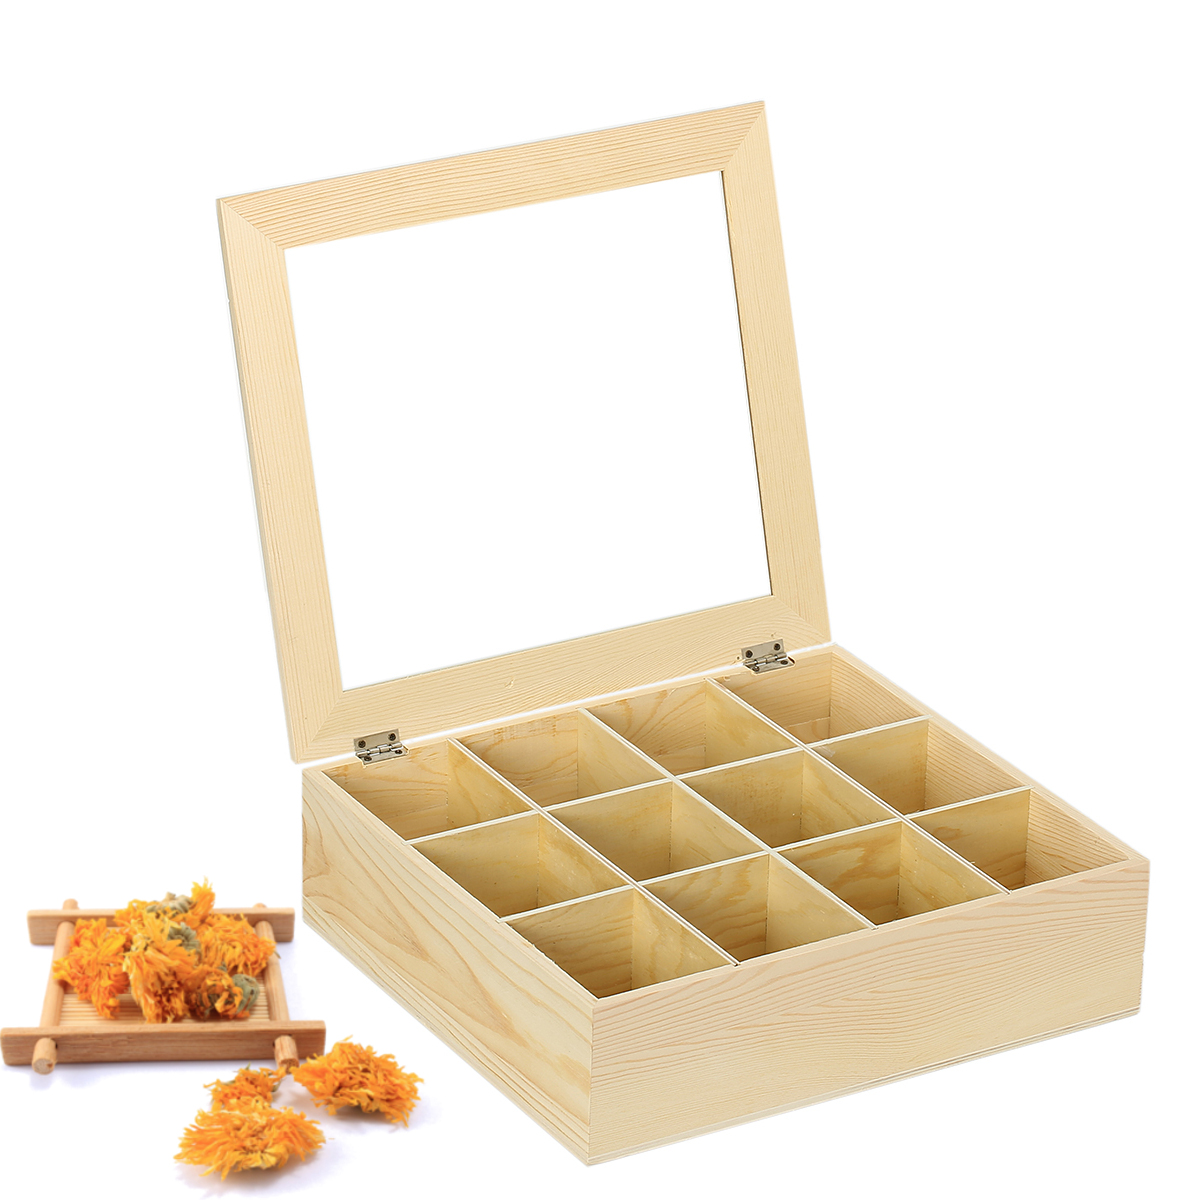 

12 Слотов Деревянный Чехол Чай Хранение Коробка Органайзер Сосновый Контейнер Дисплей Держатель